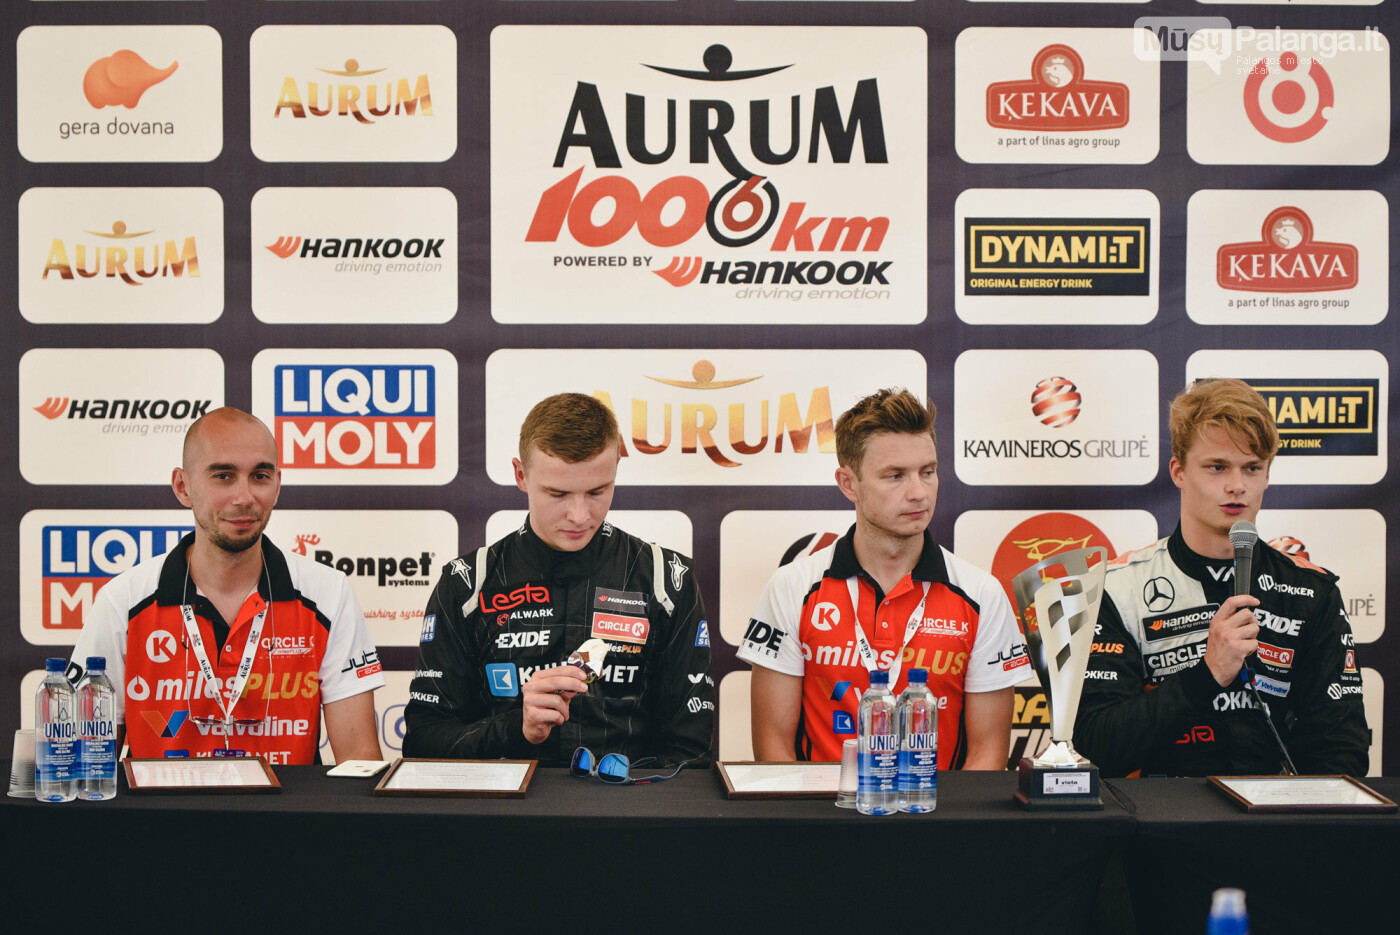 Pirmoji „Aurum 1006 km lenktynių“ starto pozicija - „Circle K Miles Plus racing team“  , nuotrauka-15, Vytauto PILKAUSKO nuotr.